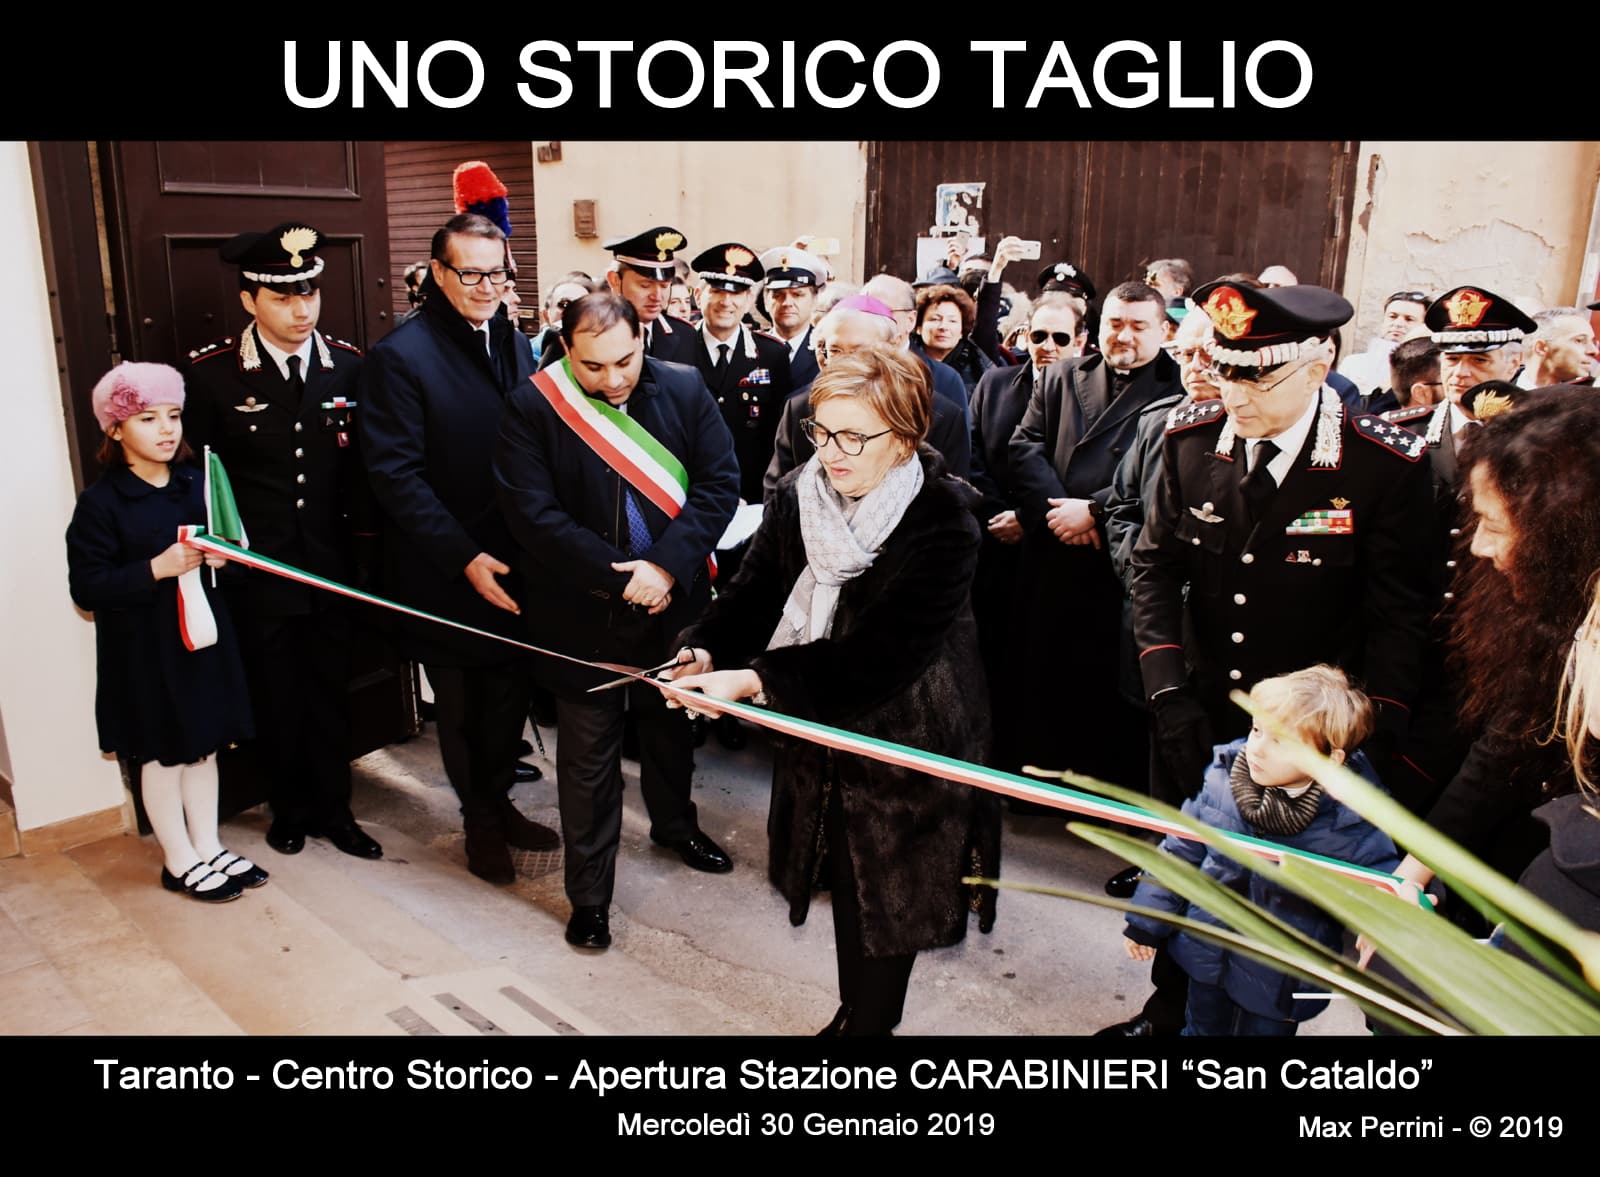 Aperta la nuova stazione dei Carabinieri nel Centro Storico di Taranto